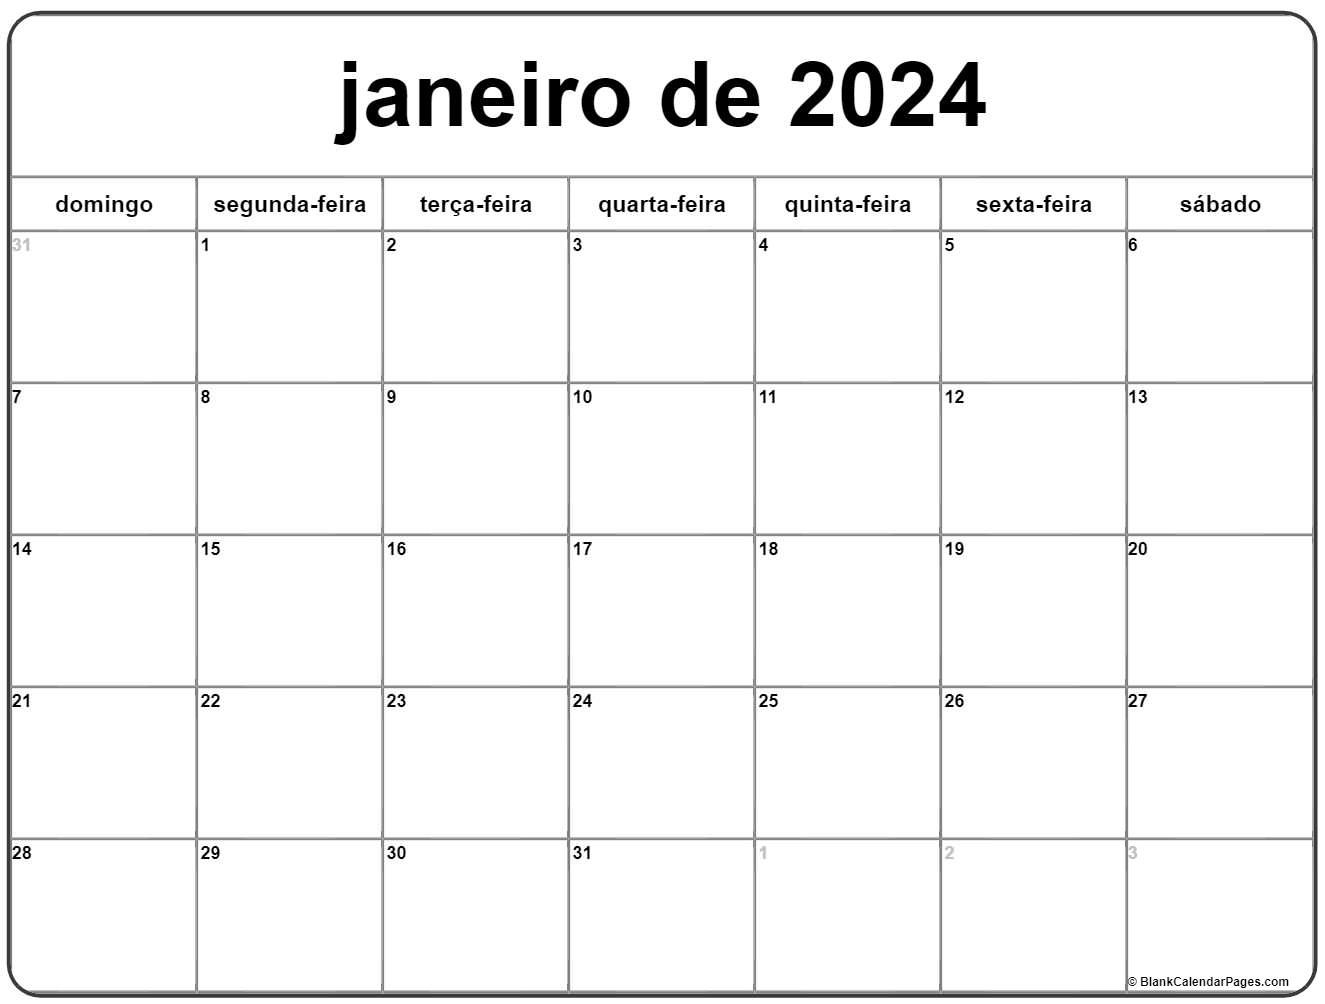 CONTINUAÇÕES DE JANEIRO 2024